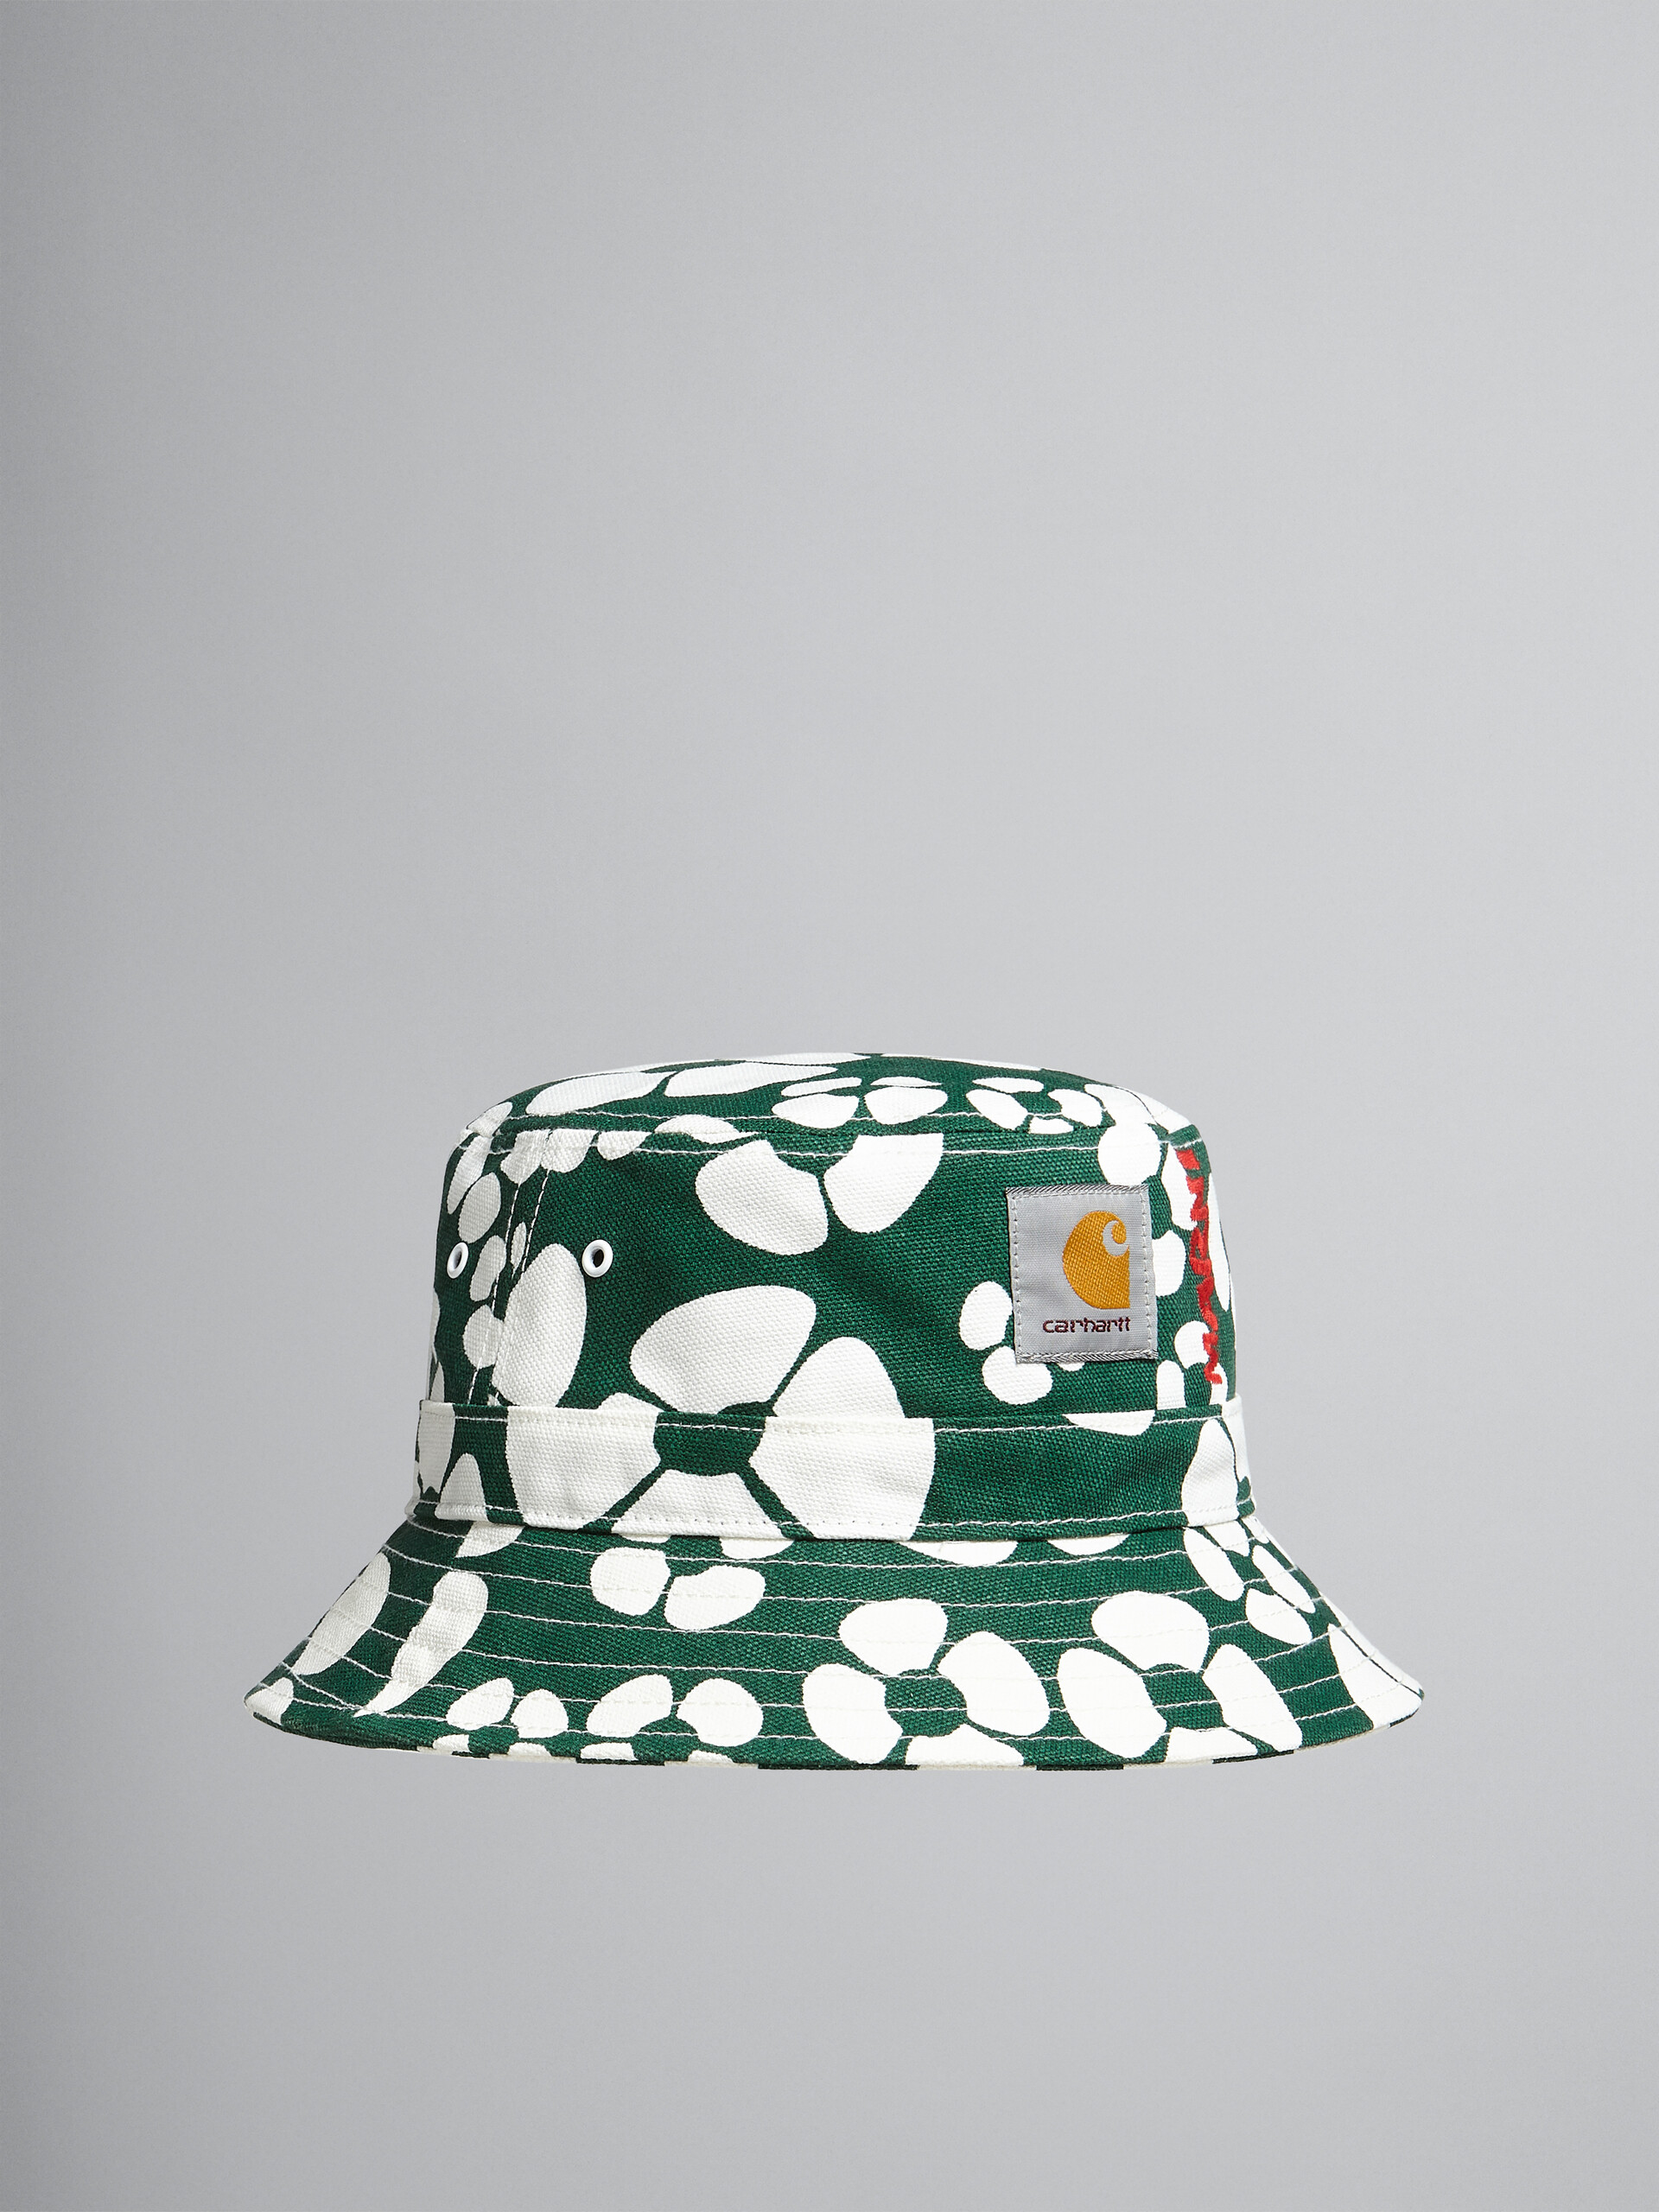 MARNI x CARHARTT WIP - green bucket hat - Hats - Image 1